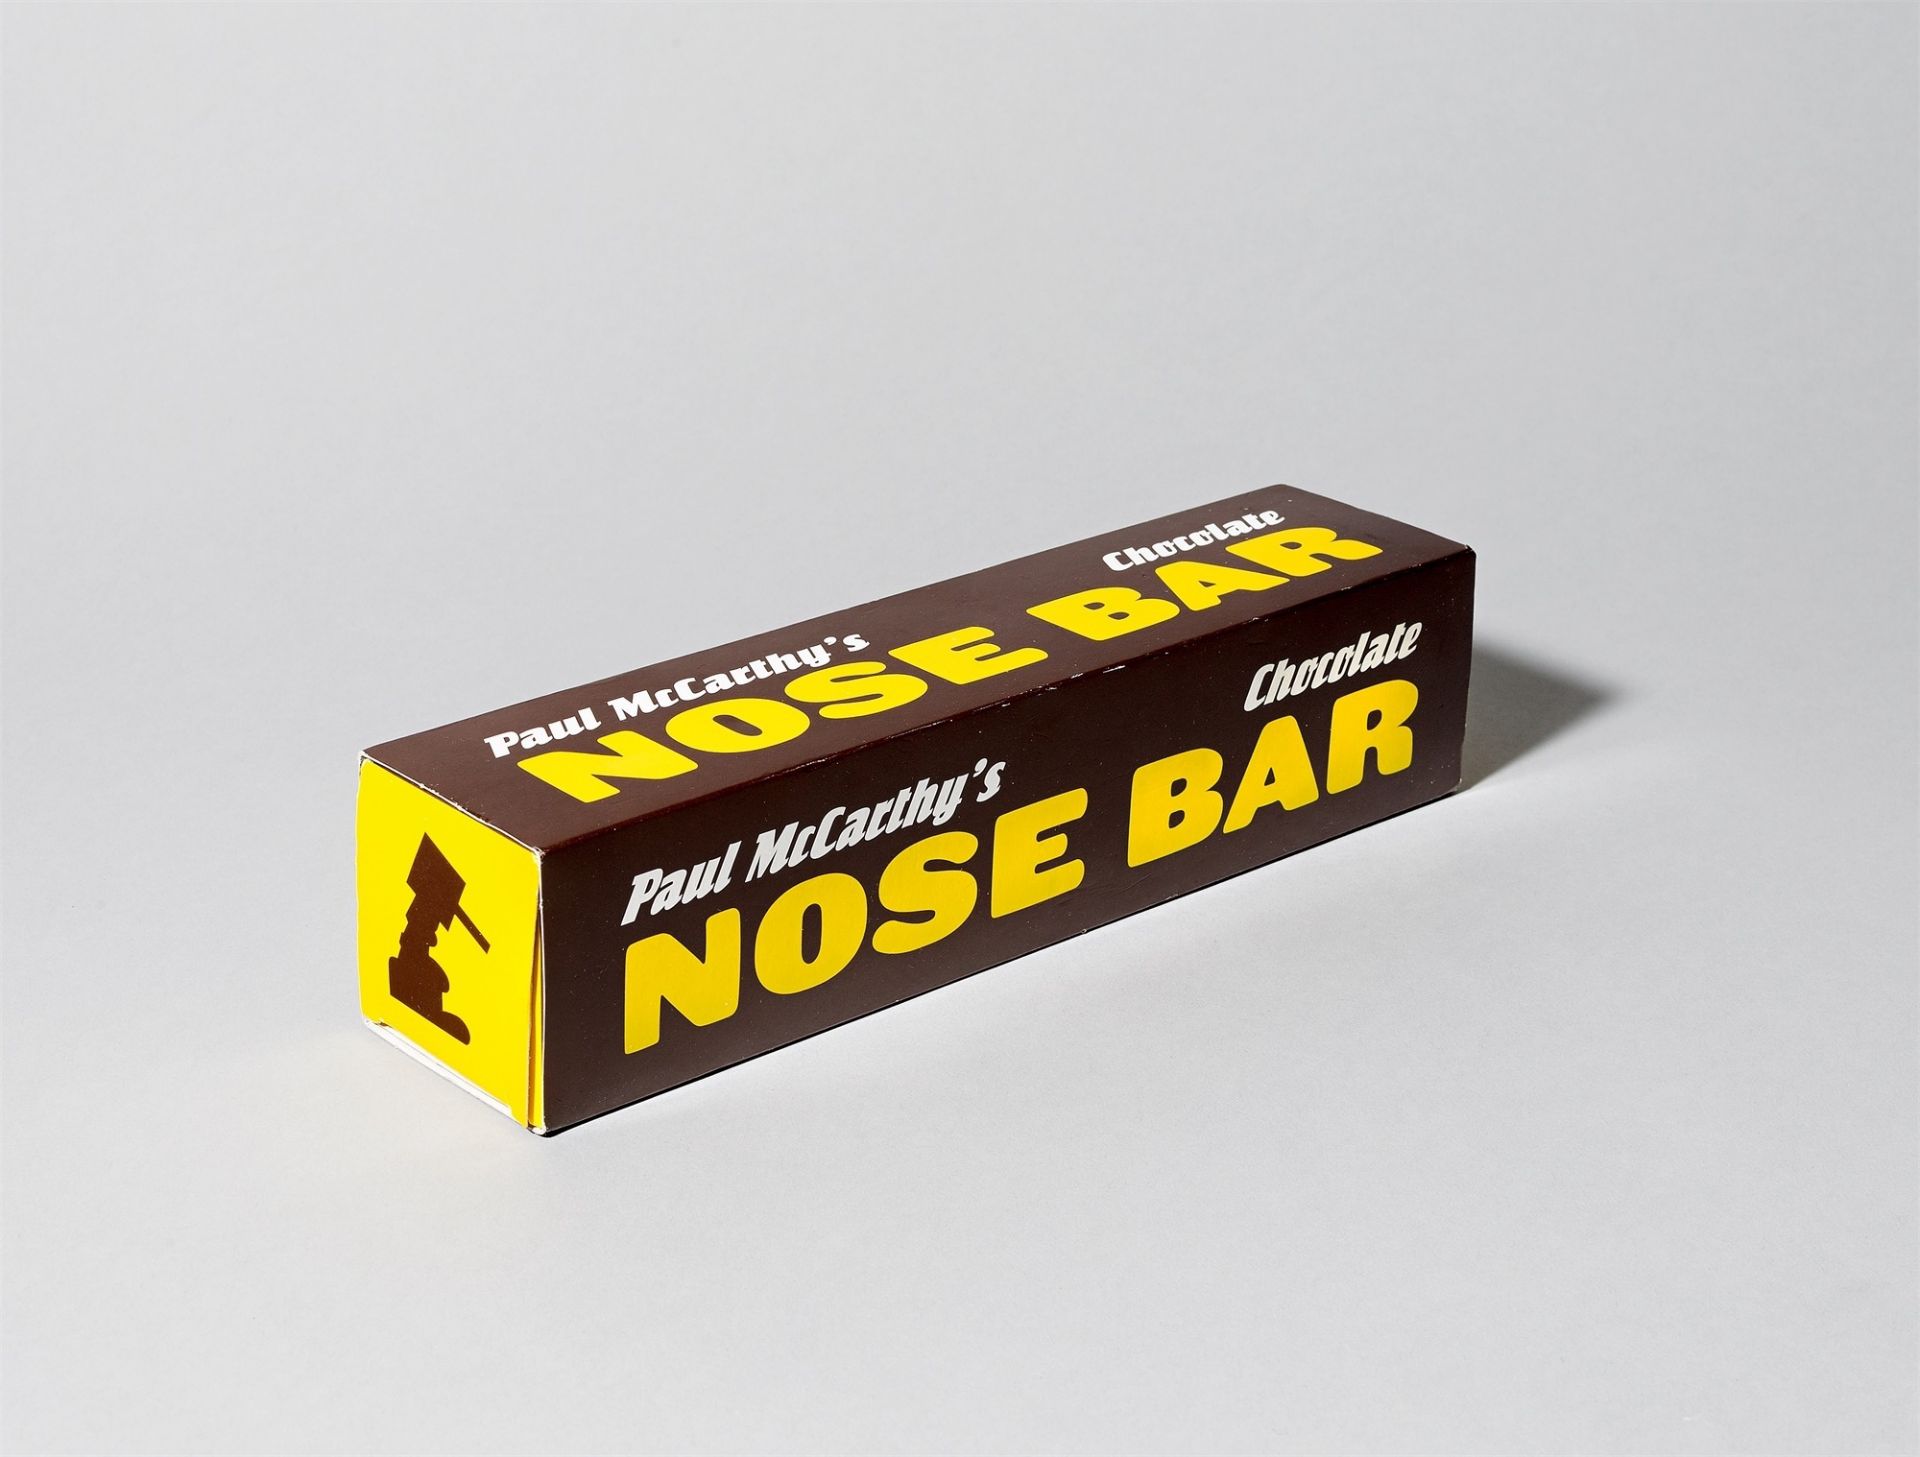 Paul McCarthy. Paul McCarthy's Chocolate Nose Bar. 2000